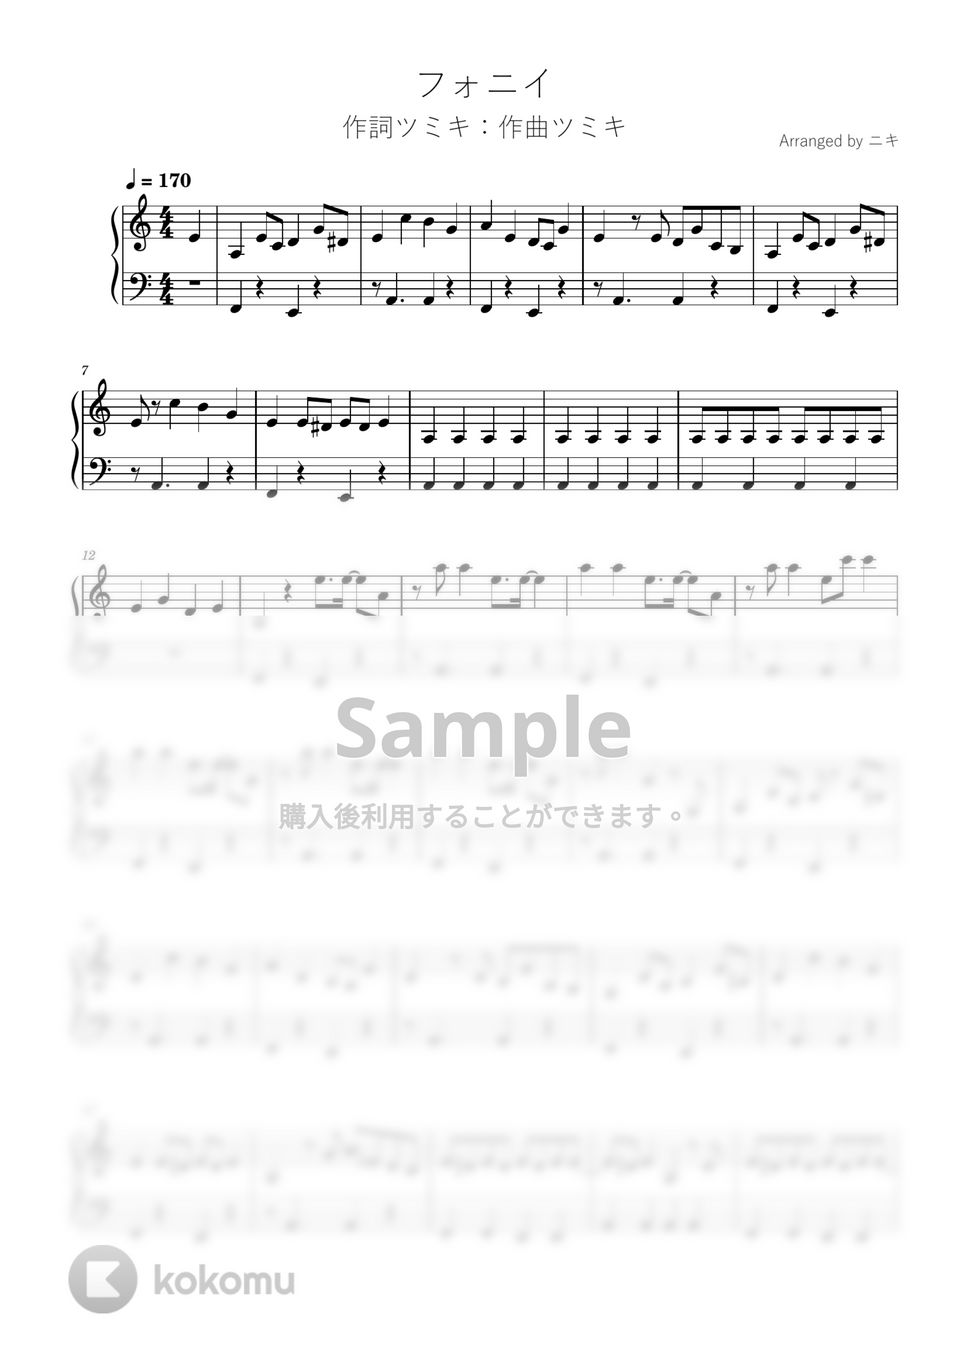 ツミキ - フォニイ (初級ピアノ / ボカロ / フォニイ / ツミキ) by 簡単ボカロピアノch ニキ